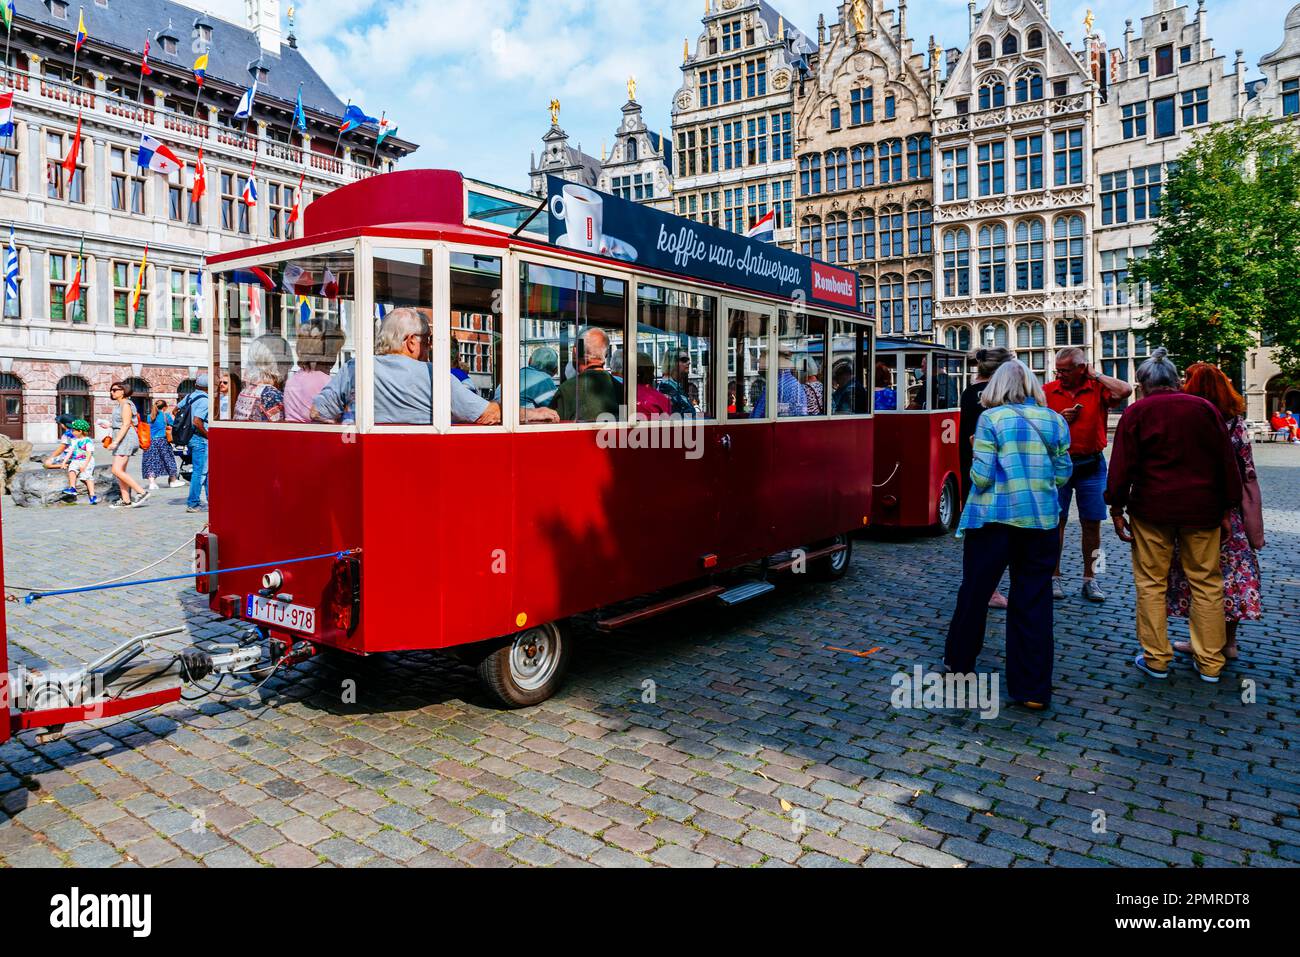 Tren para visitas turísticas. El Grote Markt es la plaza central de Amberes, Bélgica, situada en el casco antiguo de la ciudad. Amberes, Región flamenca, Bel Foto de stock